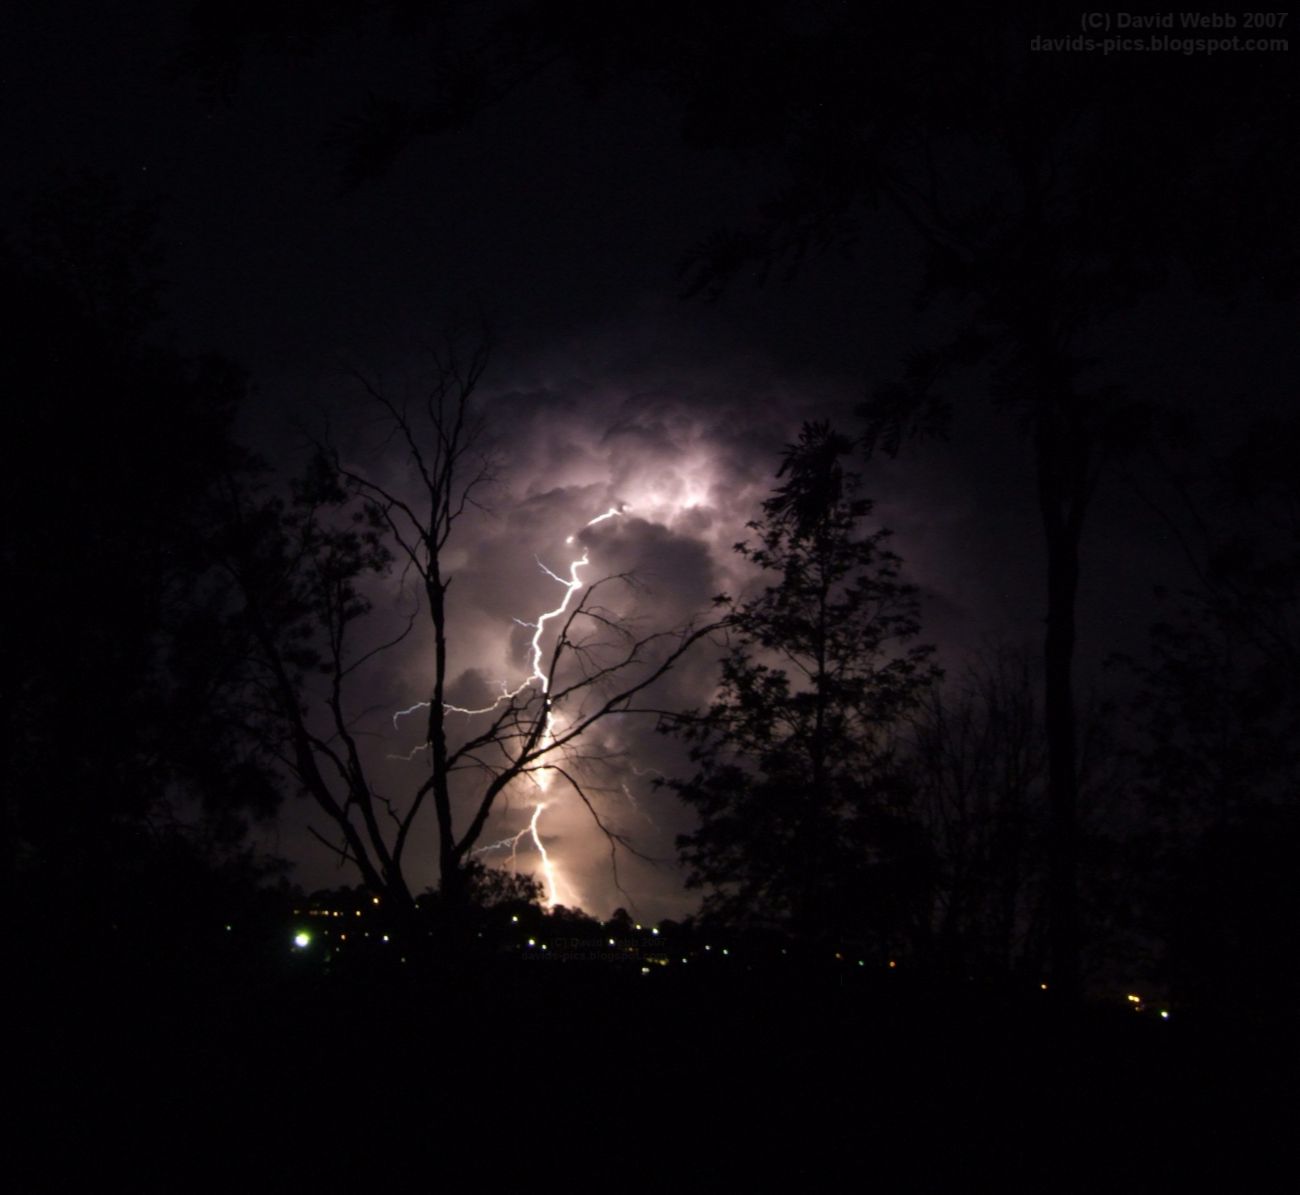 lightning striking dead tree at night